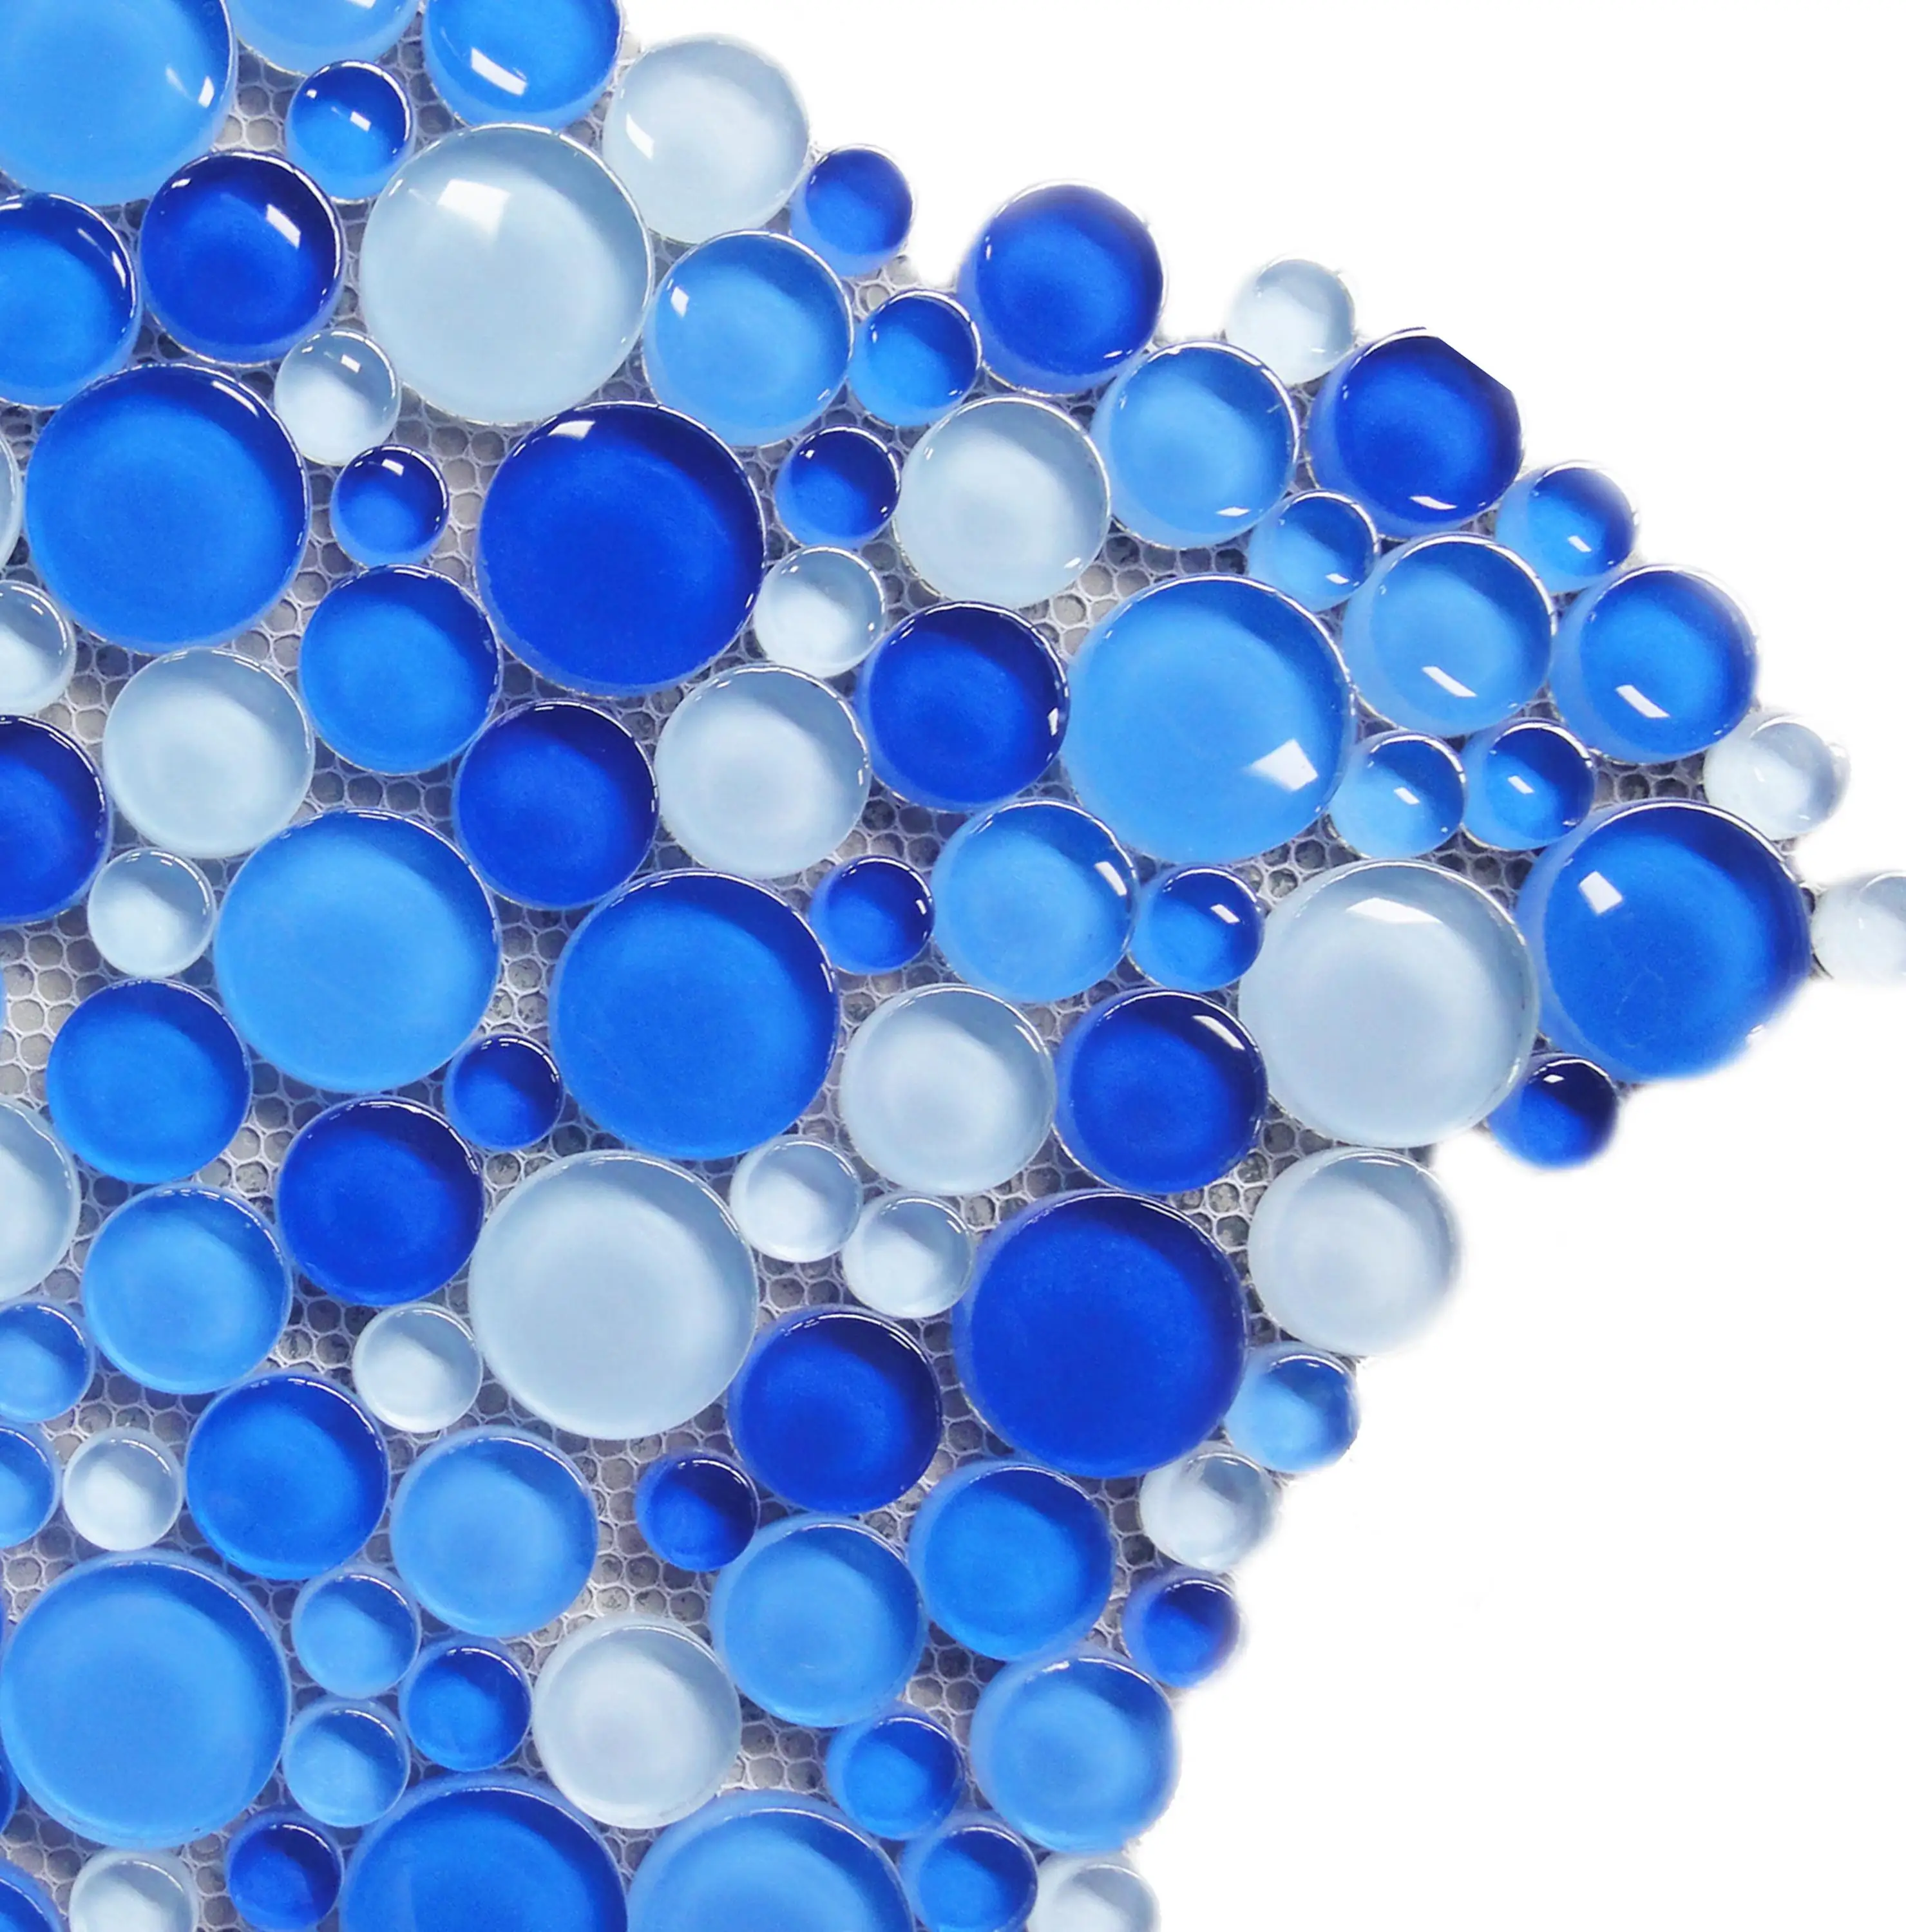 Aqua Bubble Round Blue Glass Mosaic Tile, Blue Glass Mosaic, Blue Mosaic Tiles